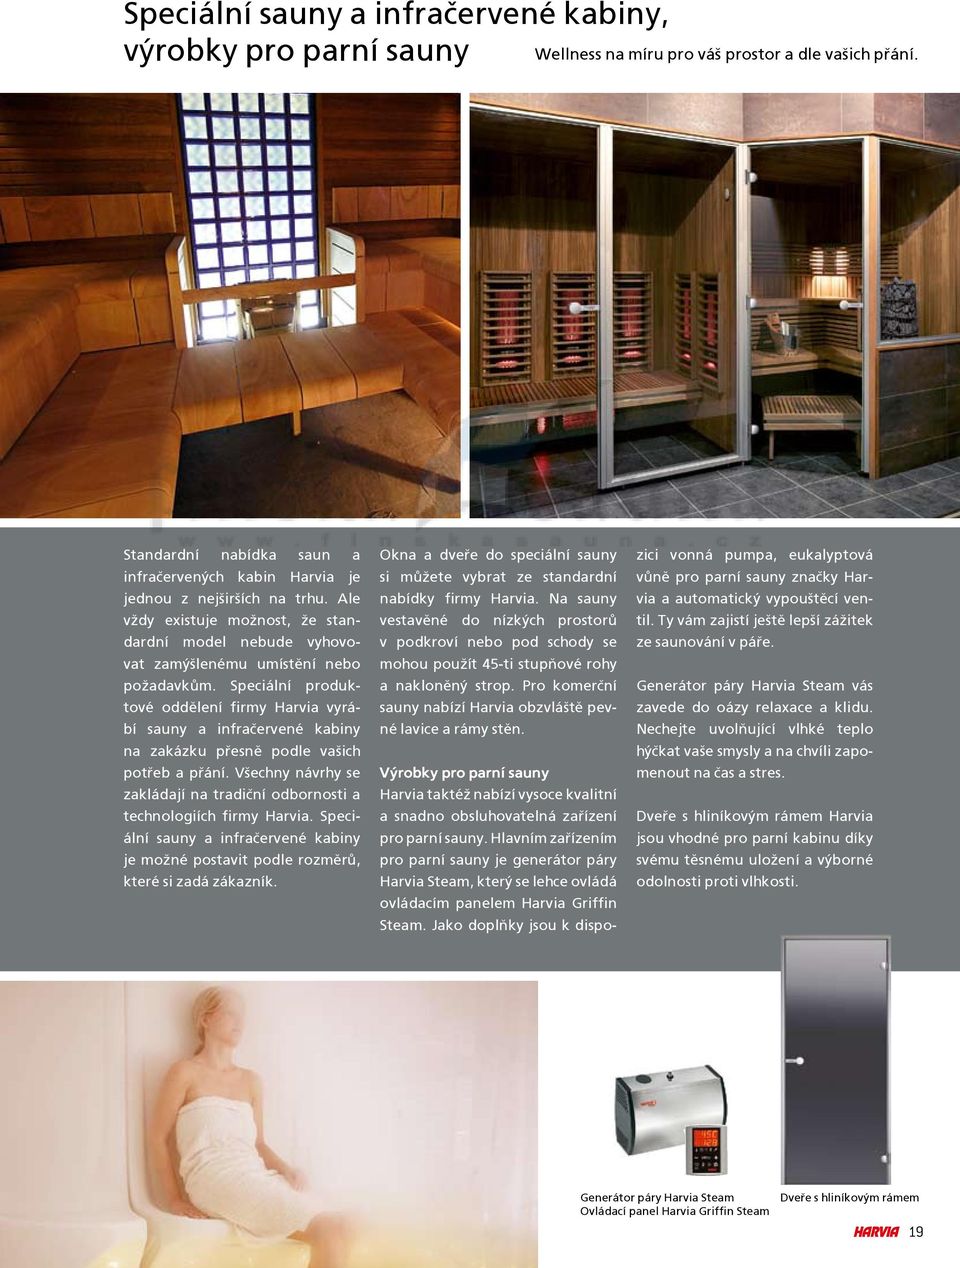 Speciální produktové oddìlení firmy Harvia vyrábí sauny a infraèervené kabiny na zakázku pøesnì podle va¹ich potøeb a pøání.